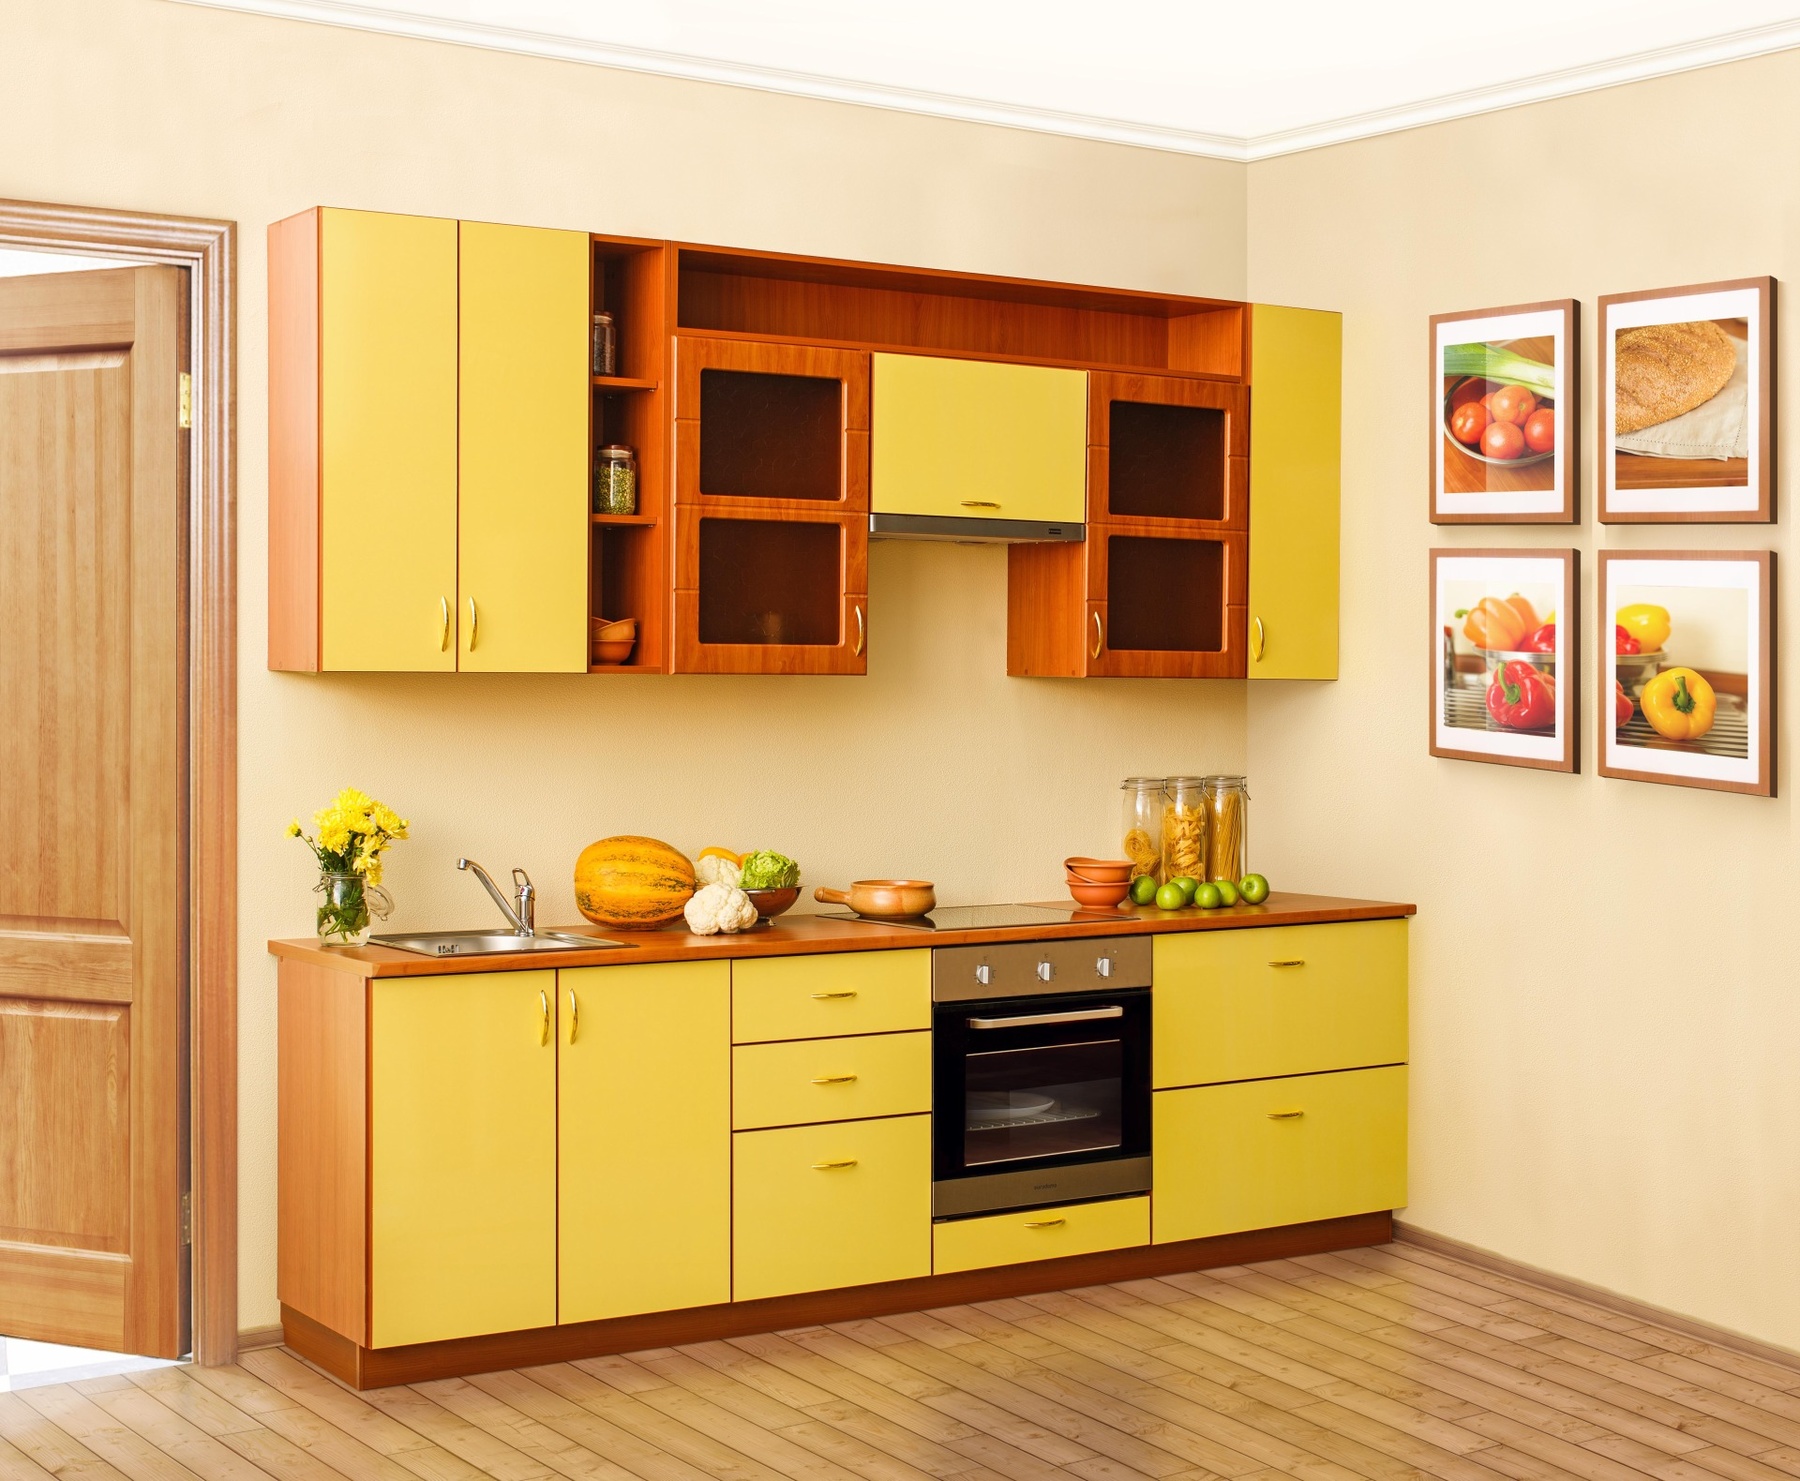 Купить желтую кухню. Кухня Тропикана трио. Желтый кухонный гарнитур. Кухня с желтыми фасадами. Кухонные гарнитуры желтого цвета.